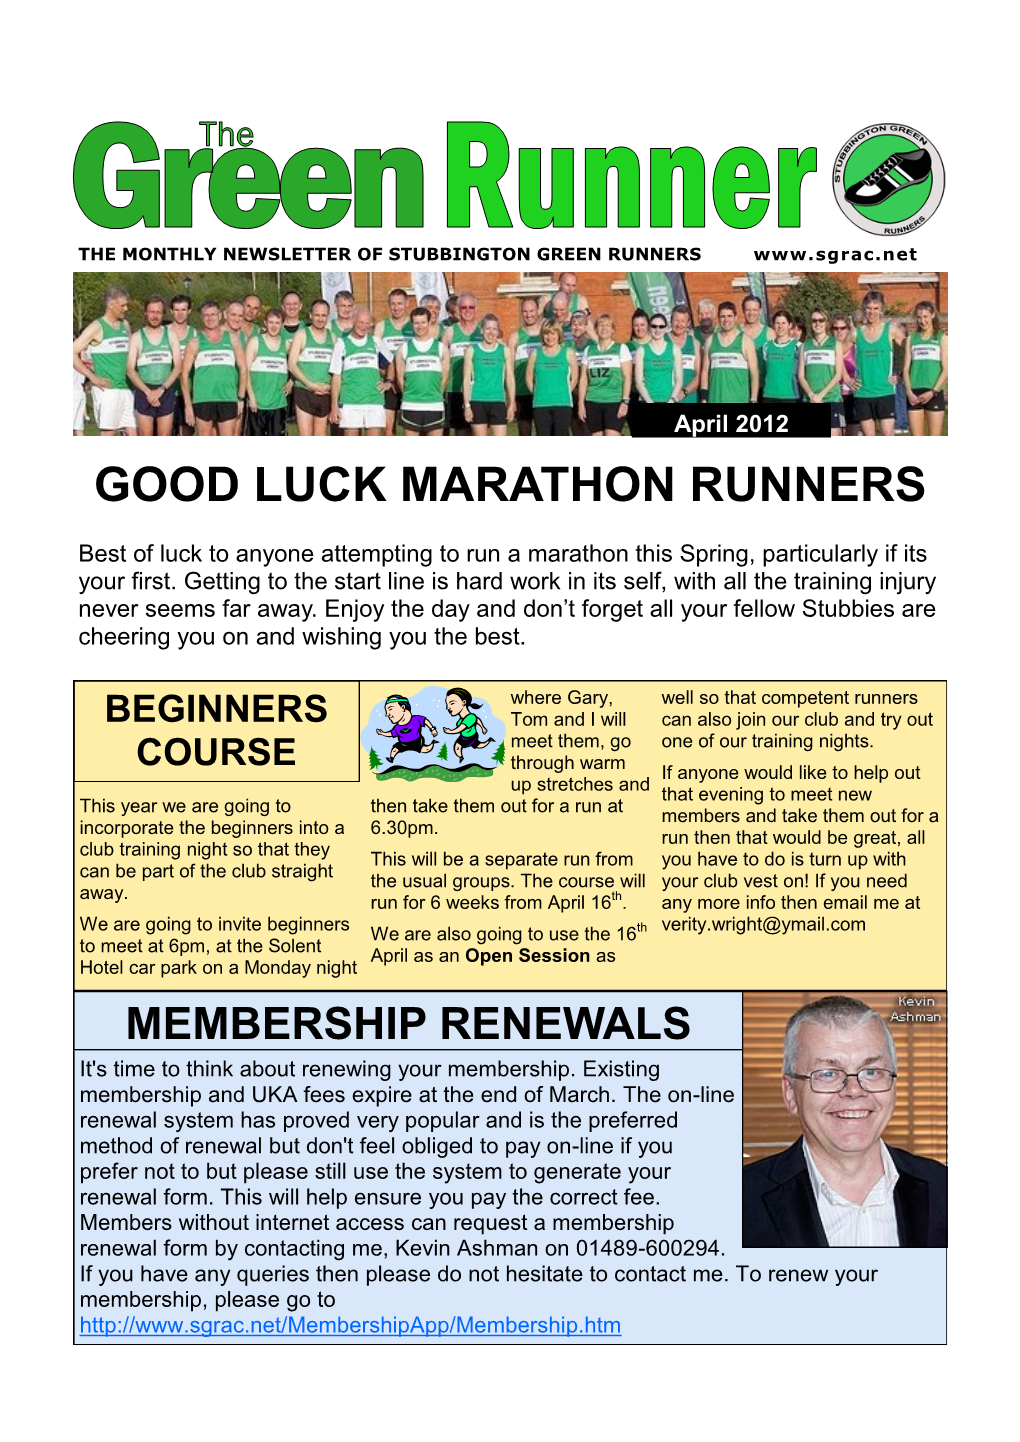 Good Luck Marathon Runners